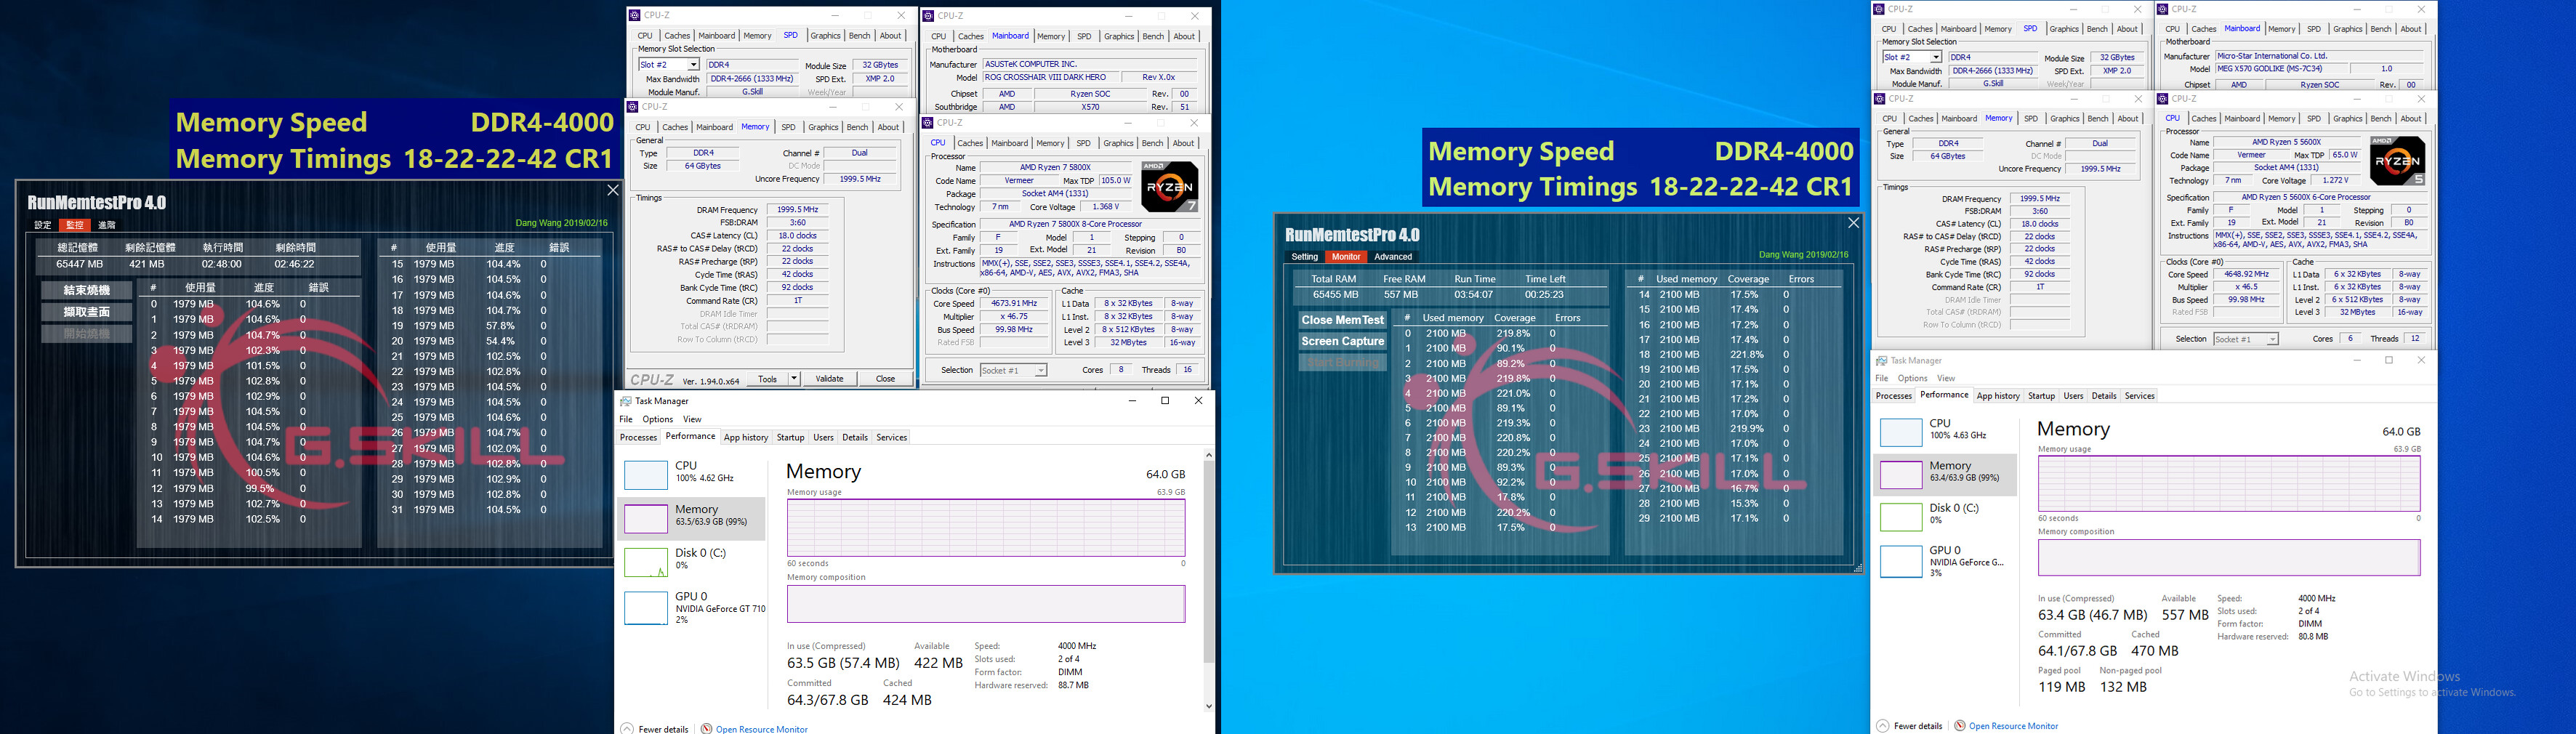 G.SKILL Updates Trident Z Neo DDR4 